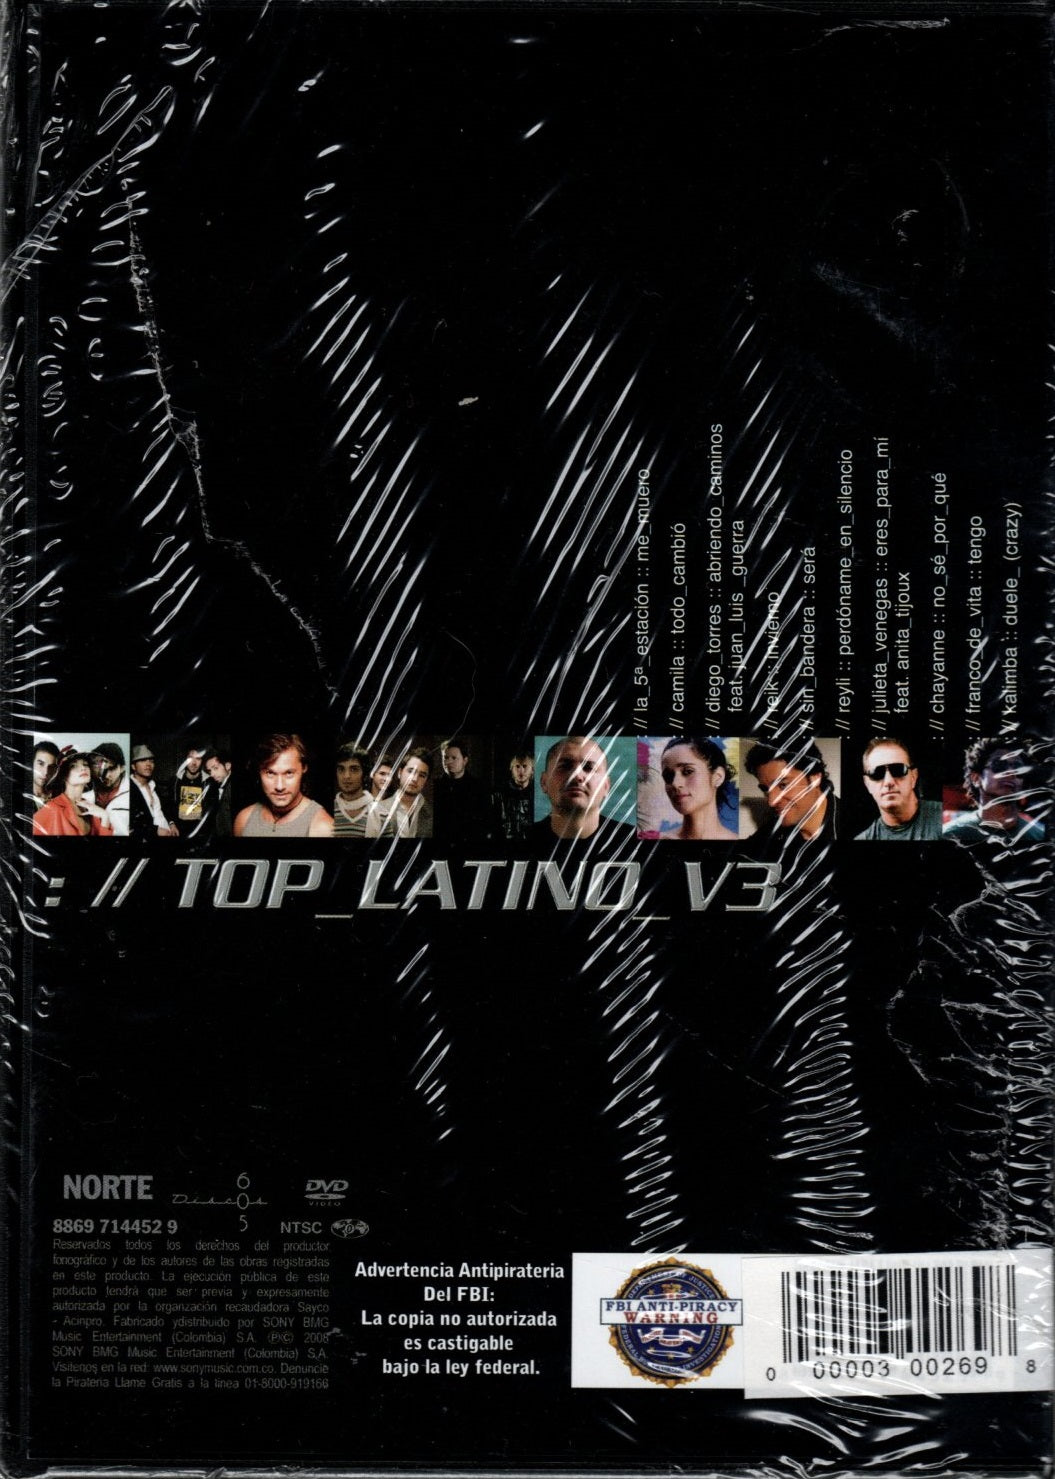 DVD + KAREOKE Top latino V3 - Colección Super Estrella